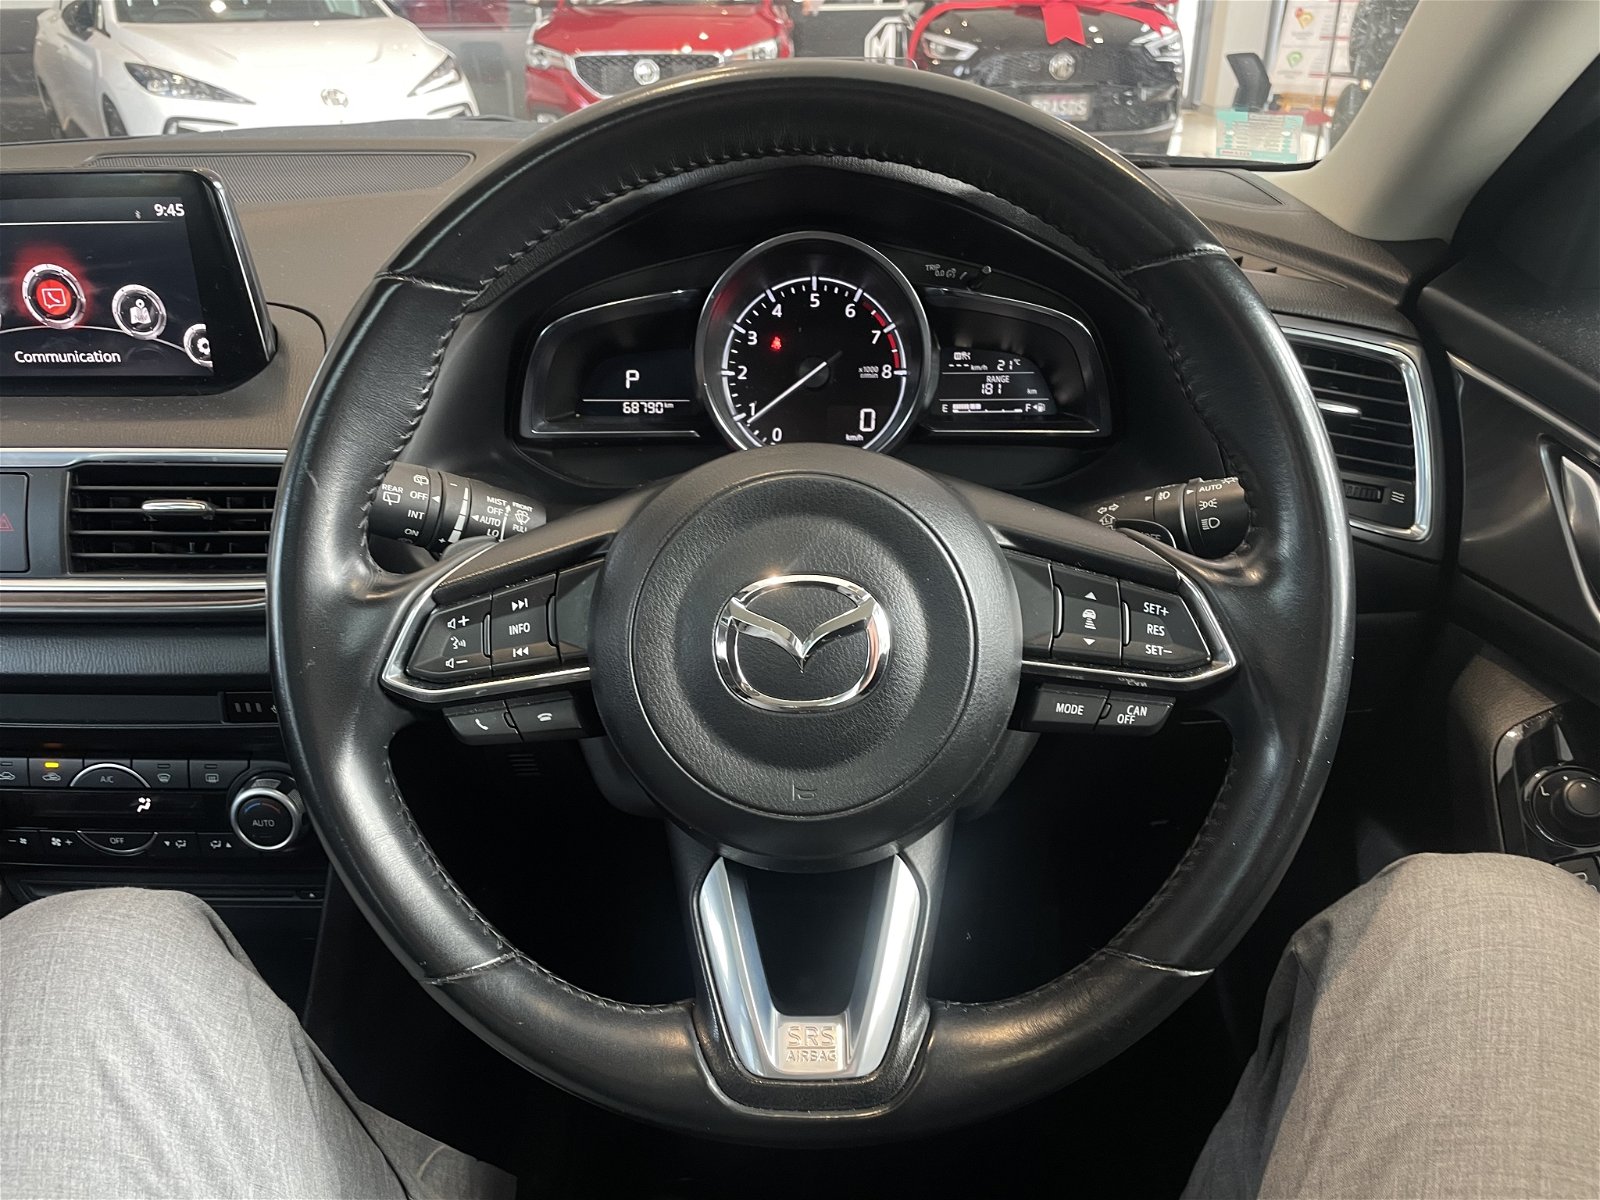 2018 Mazda 3 Sp25 Ltd 2.5P/6At